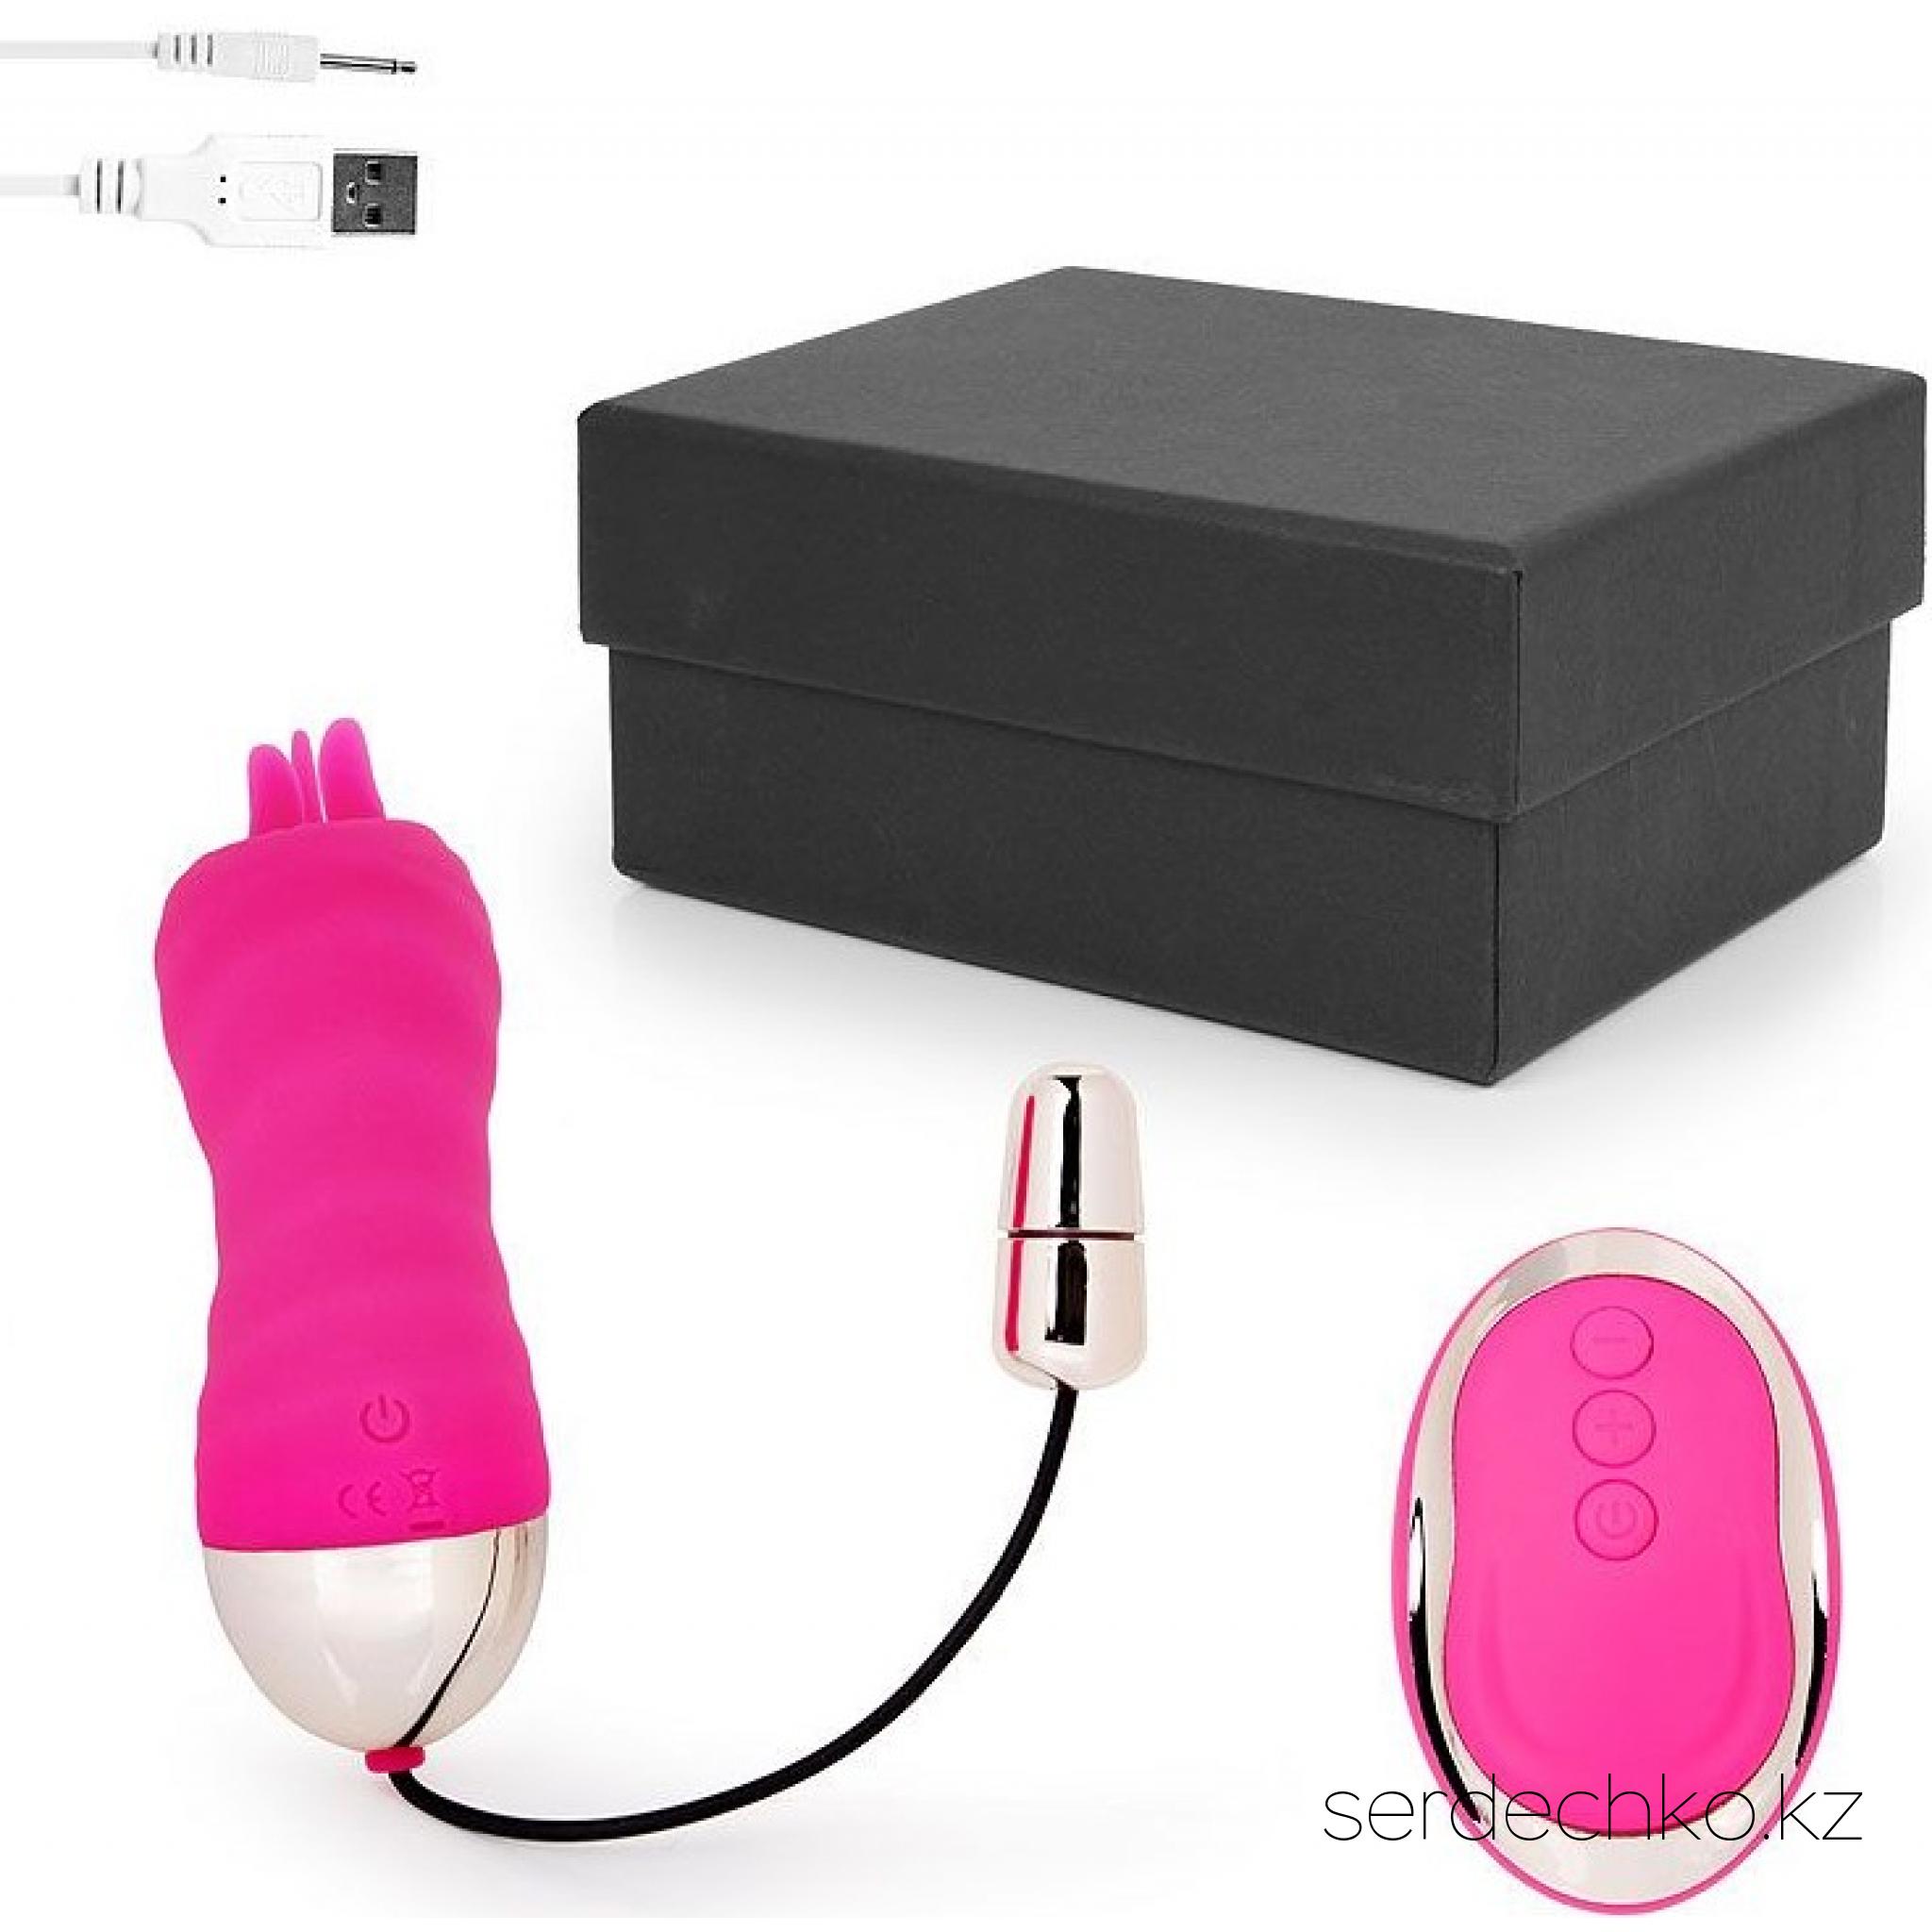 Перезаряжаемое розовое виброяйцо с 10 режимами вибрации и пультом ДУ, A-loving , 
	Перезаряжаемое розовое виброяйцо с 10 режимами вибрации и пультом ДУ, длина 8.5 см, диаметр 3 см, A-loving 2045-6

	Оригинальная секс-игрушка c разнообразными режимами вибрации для стимуляции эрогенных зон. В комплект входит дистанционный пульт управления и USB-провод.
	
	На конце интимного аксессуара имеются небольшие язычки, которые при включении двигаются, создавая эффект оральных ласк. Для включения изделия нажмите кнопку на его корпусе. Должен загореться индикатор. Переключение виброрежимов и работы язычка осуществляется с помощью той же кнопки. Для выключения нажмите и 2 секунды удерживайте эту же кнопку.
	
	Для управления работой режима вибрации с дистанционного пульта сначала необходимо нажать и 2 секунды удерживать кнопку на корпусе секс-игрушки. С пульта можно включать/переключать виброрежимы, а также выключать эротический аксессуар.
	
	На шнурке-хвостике расположен специальный элемент с откручивающейся крышкой, в котором имеется разъём для USB-зарядки. При возникновении необходимости зарядить изделие, крышка откручивается и USB-провод вставляется в данный разъём.
